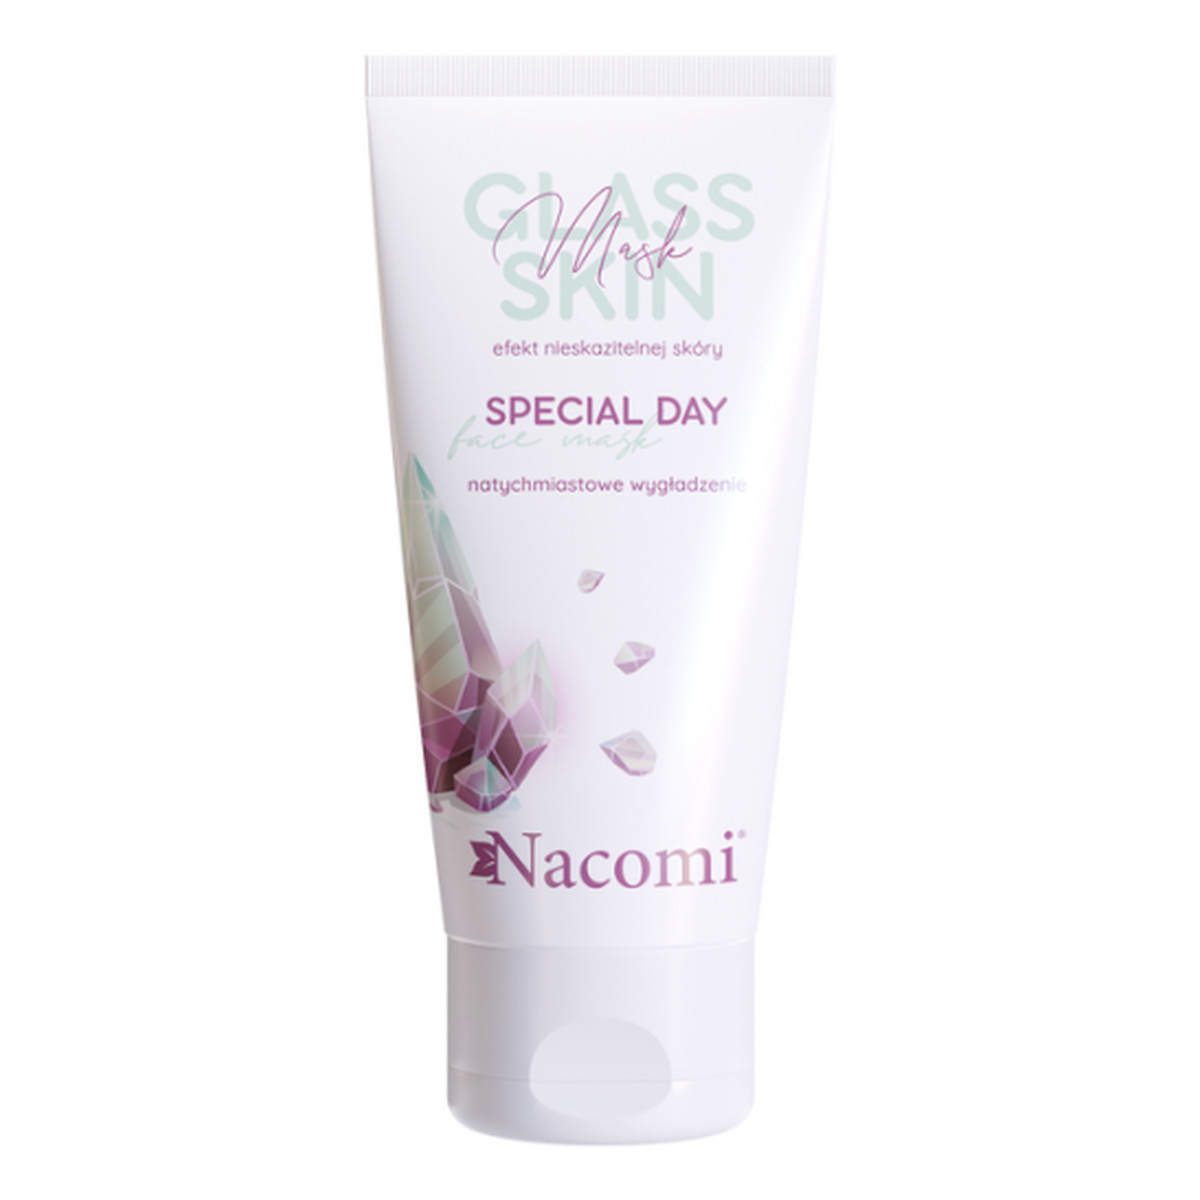 Nacomi Glass Skin Special Day Maseczka do twarzy 50ml